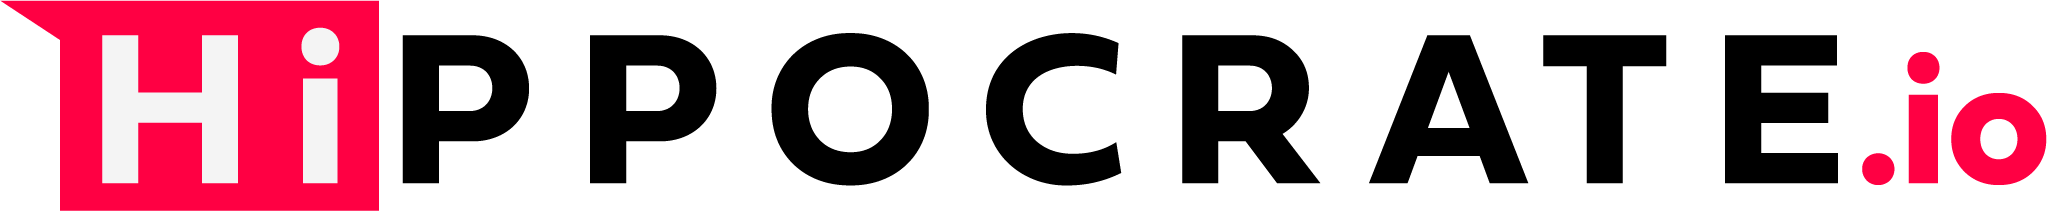 Logo Hippocrate.io